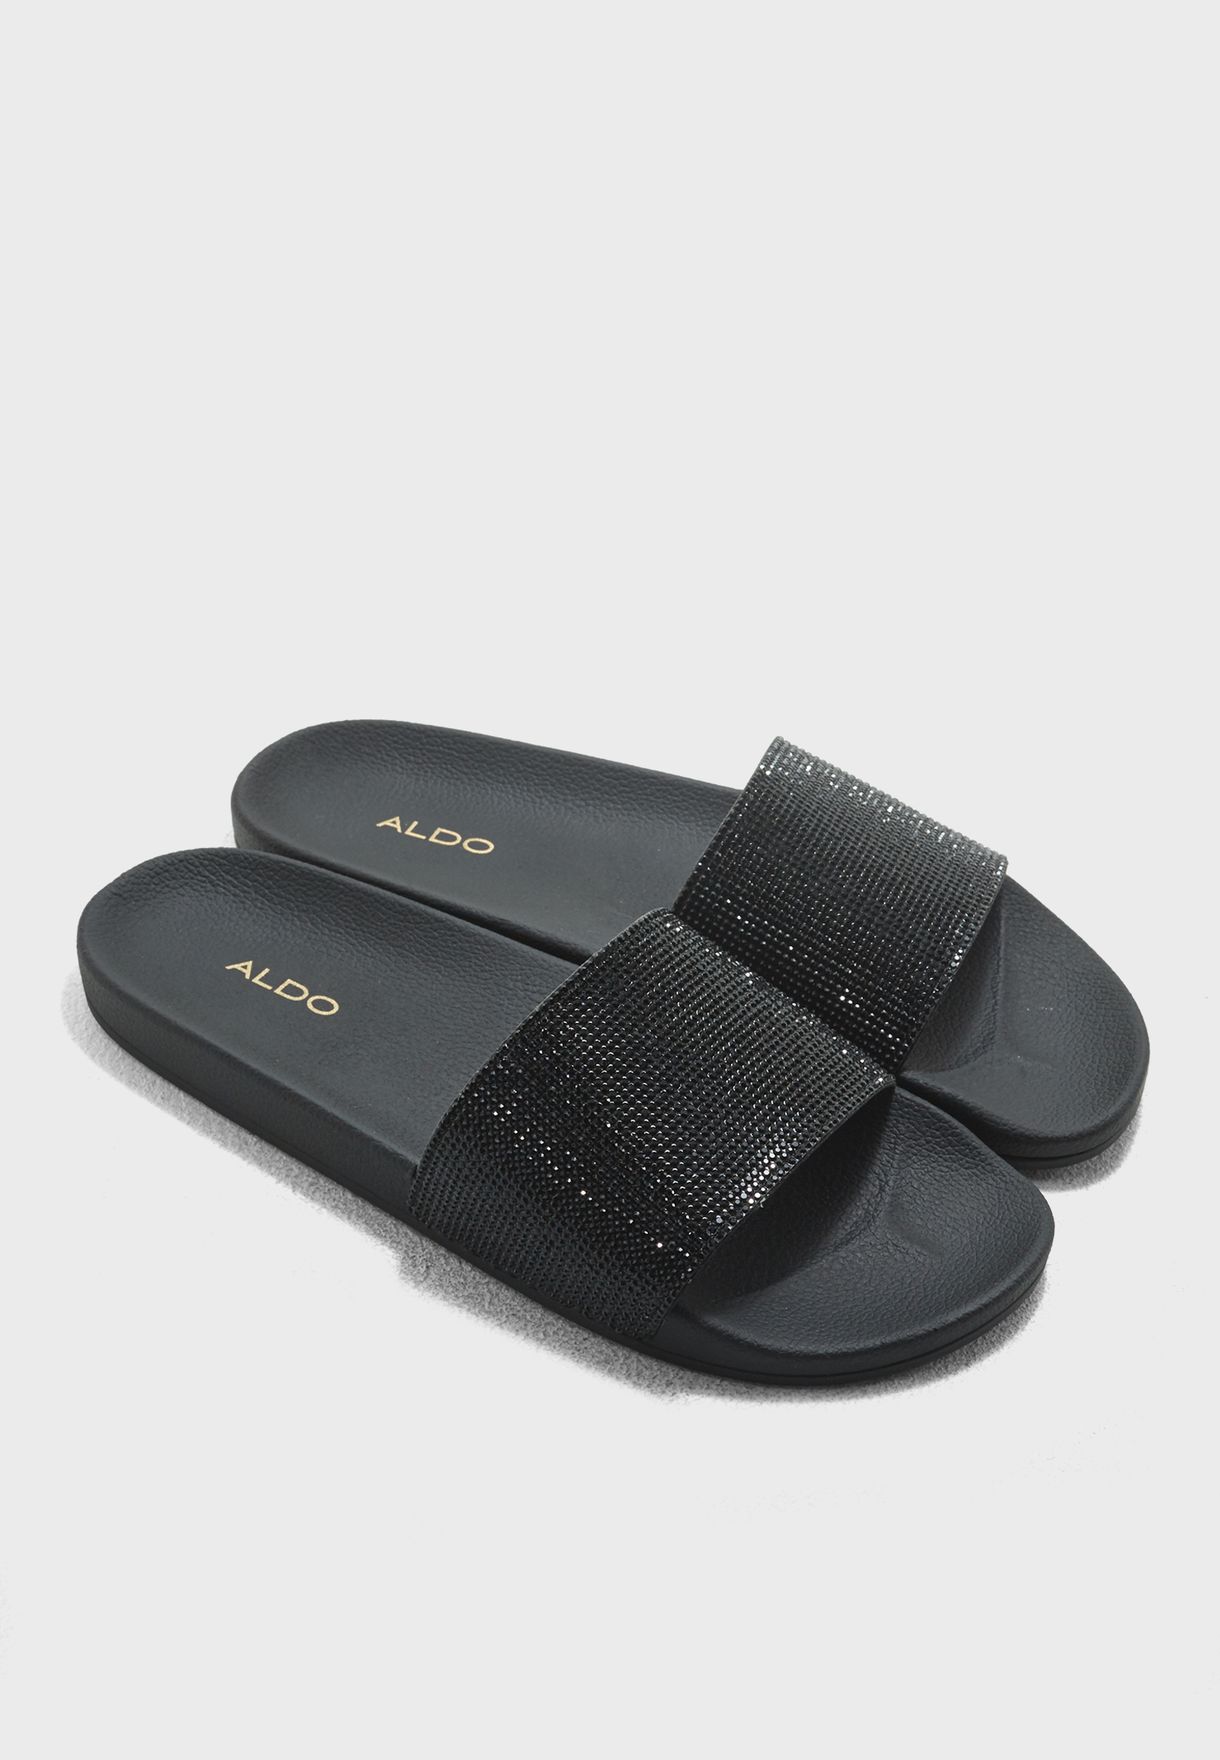 aldo bling sandals